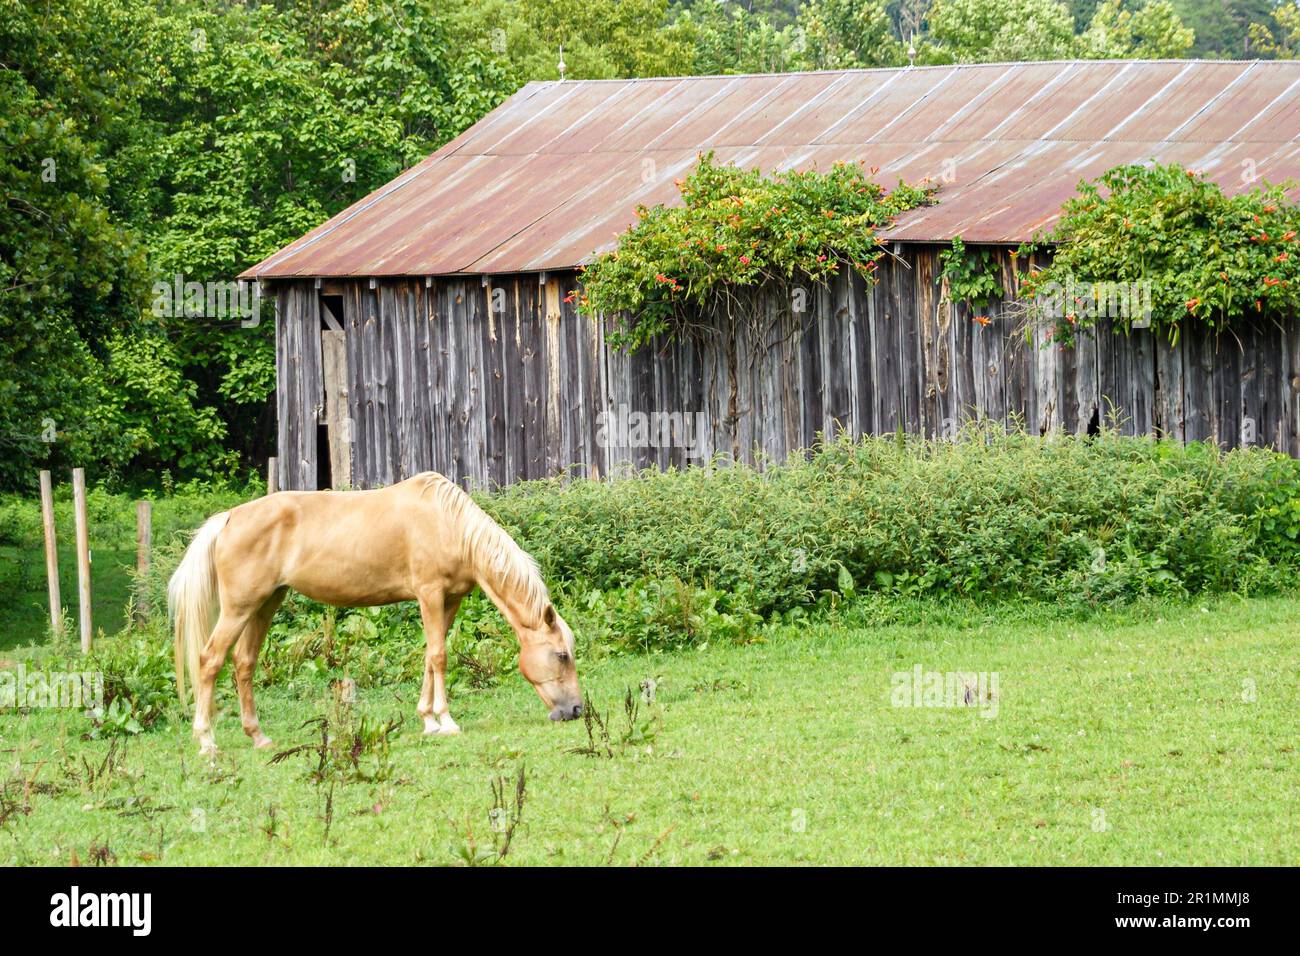 Tennessee Great Smoky Mountains National Park, campo rural campo rústico pastoreo de caballos pastos, granero desgastado por el tiempo, Foto de stock